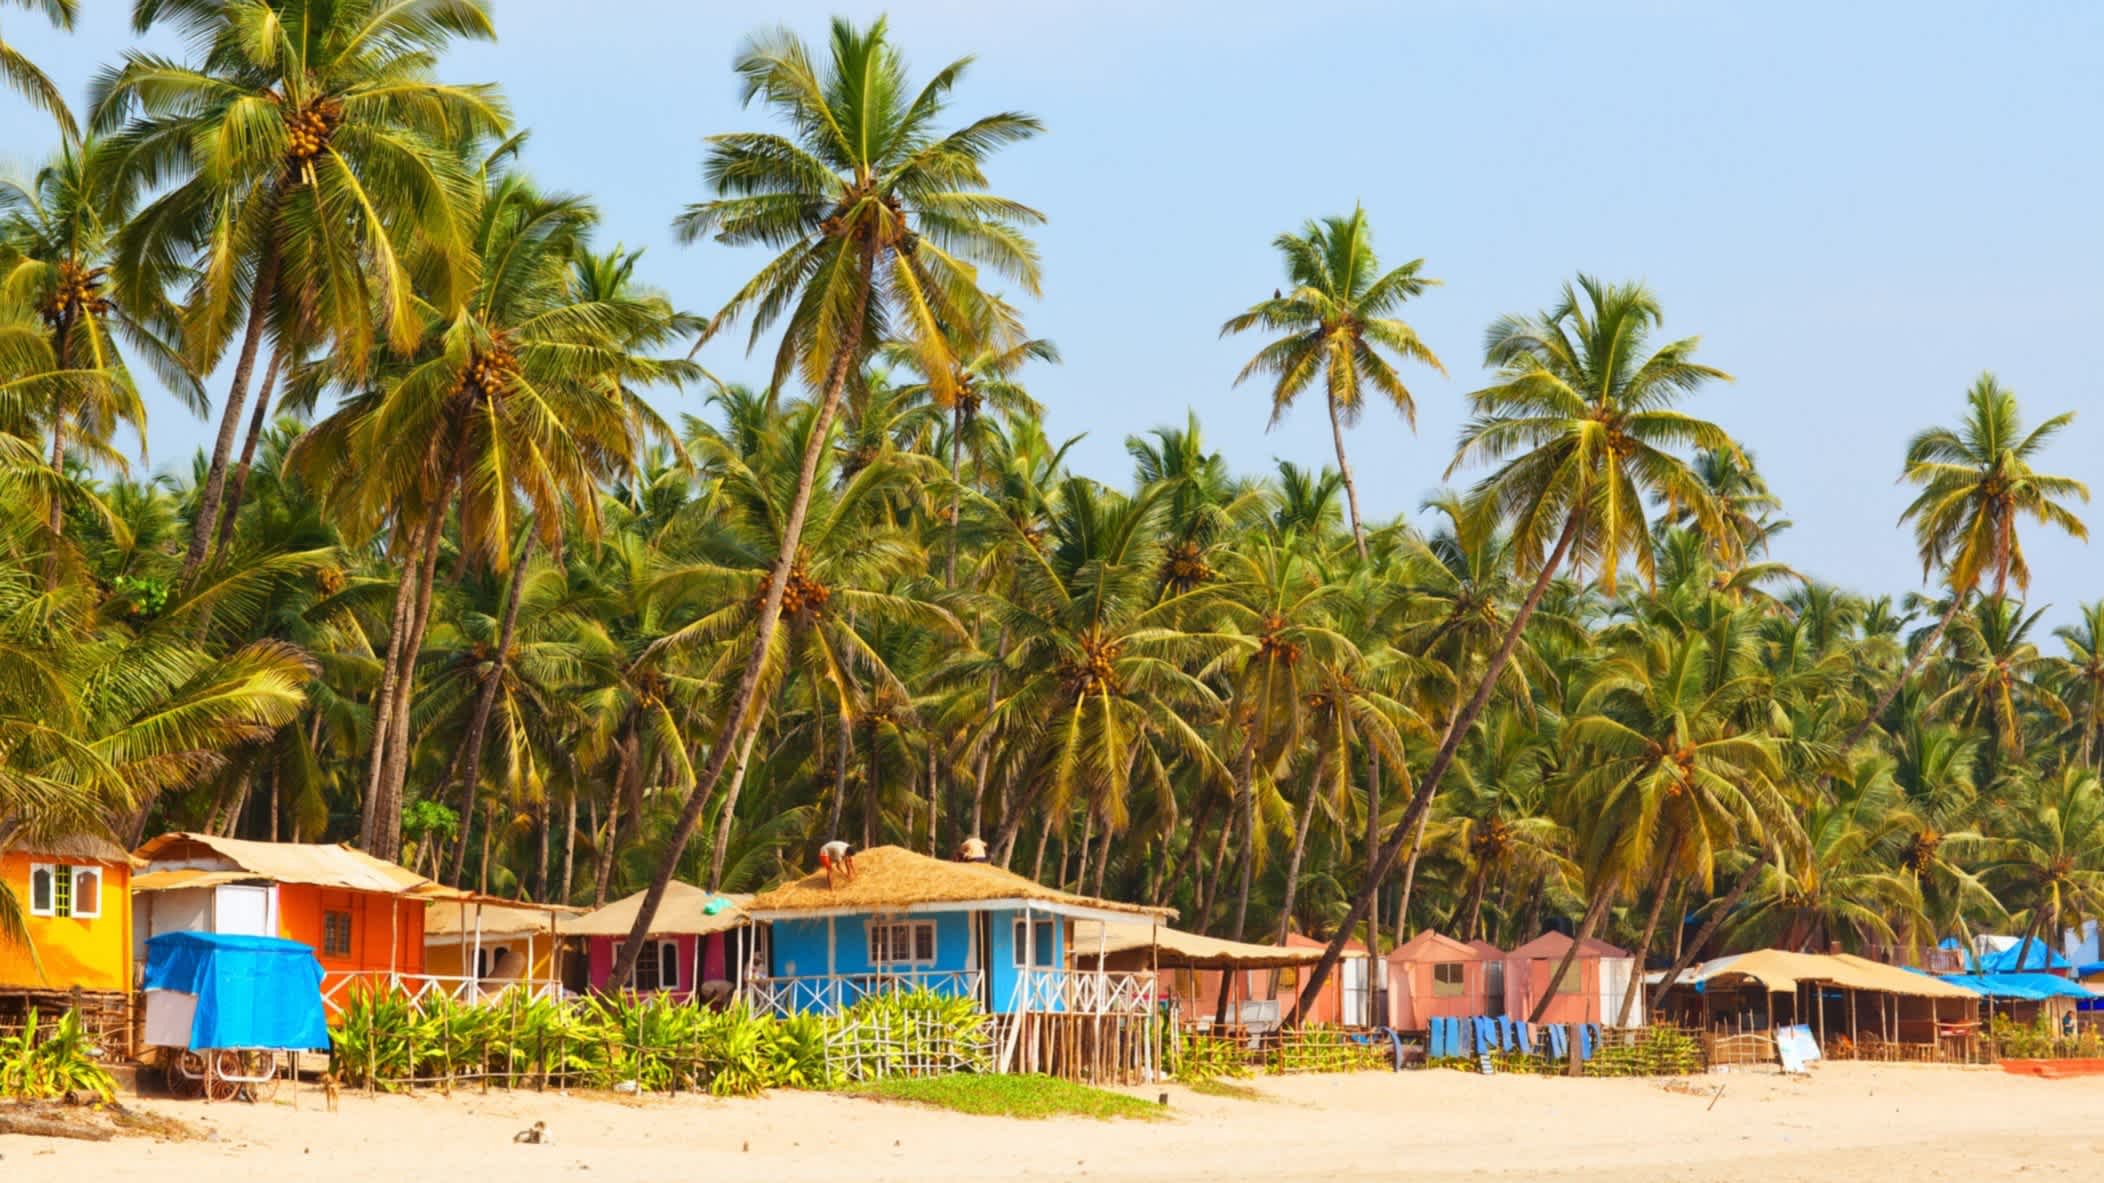 Bunte Häuser am Strand von Palolem, Goa, Indien mit vielen Palmen und bei Sonnenschein.